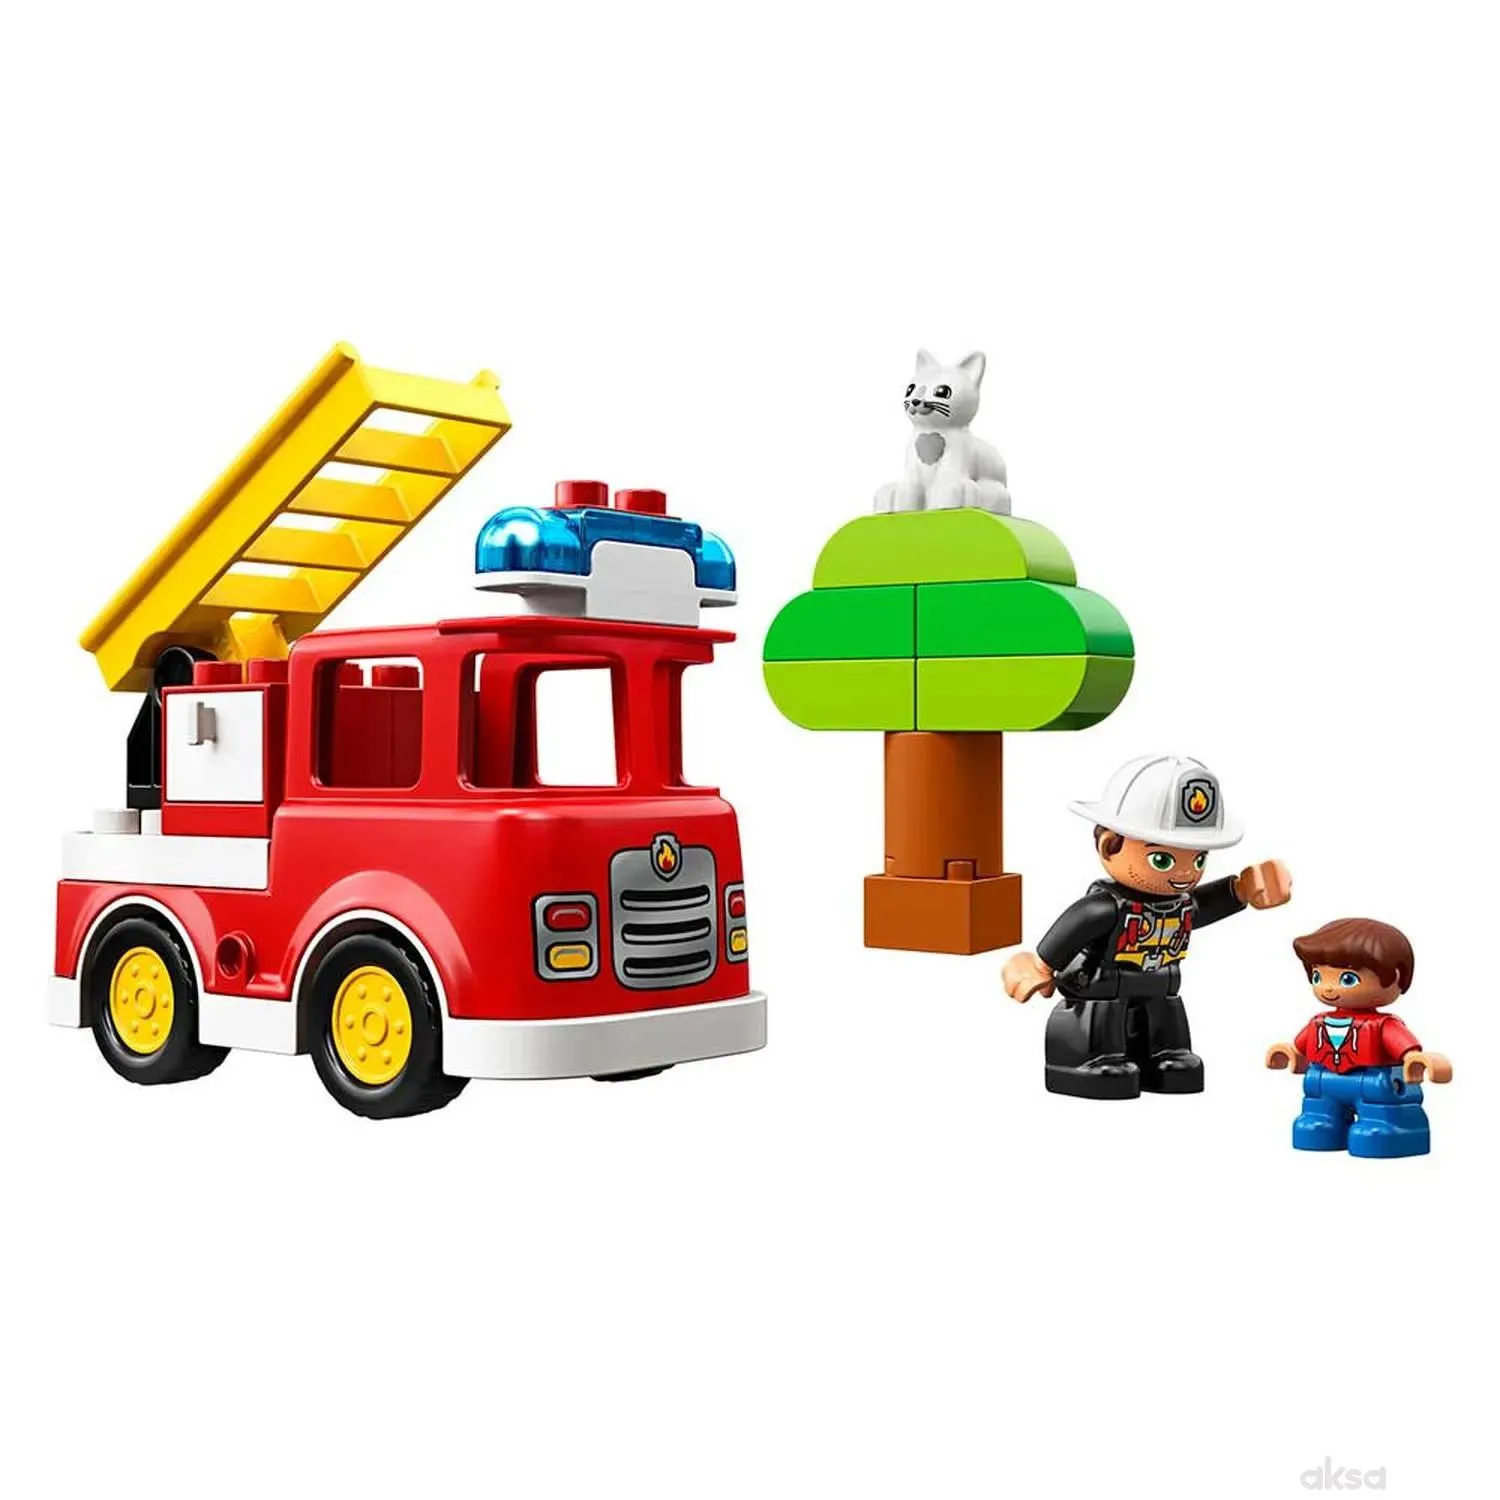 Lego Duplo Fire Truck 